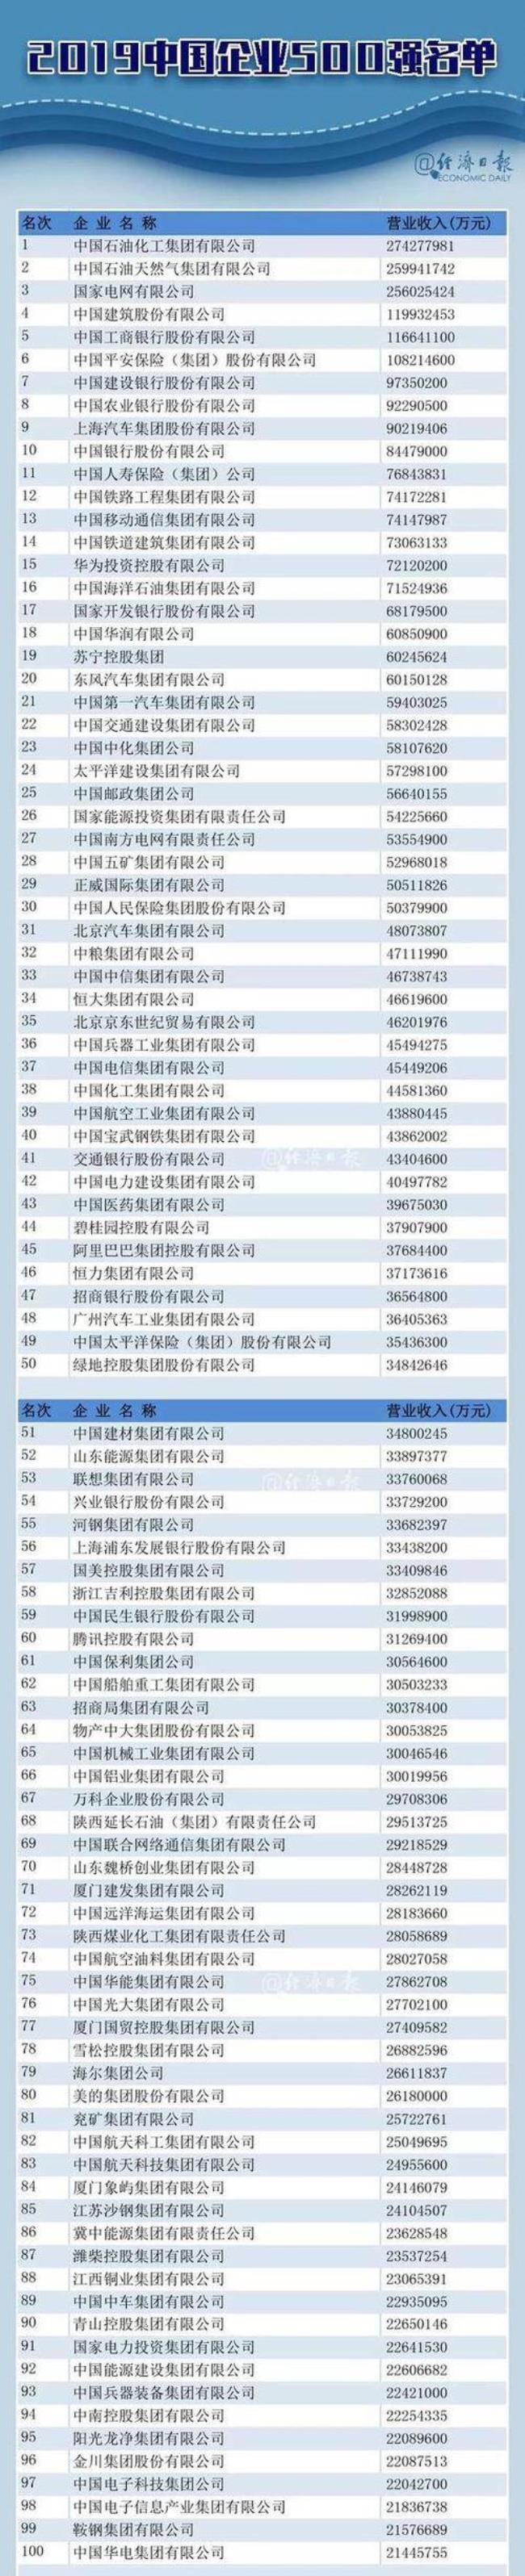 中国500强企业评选机构及标准